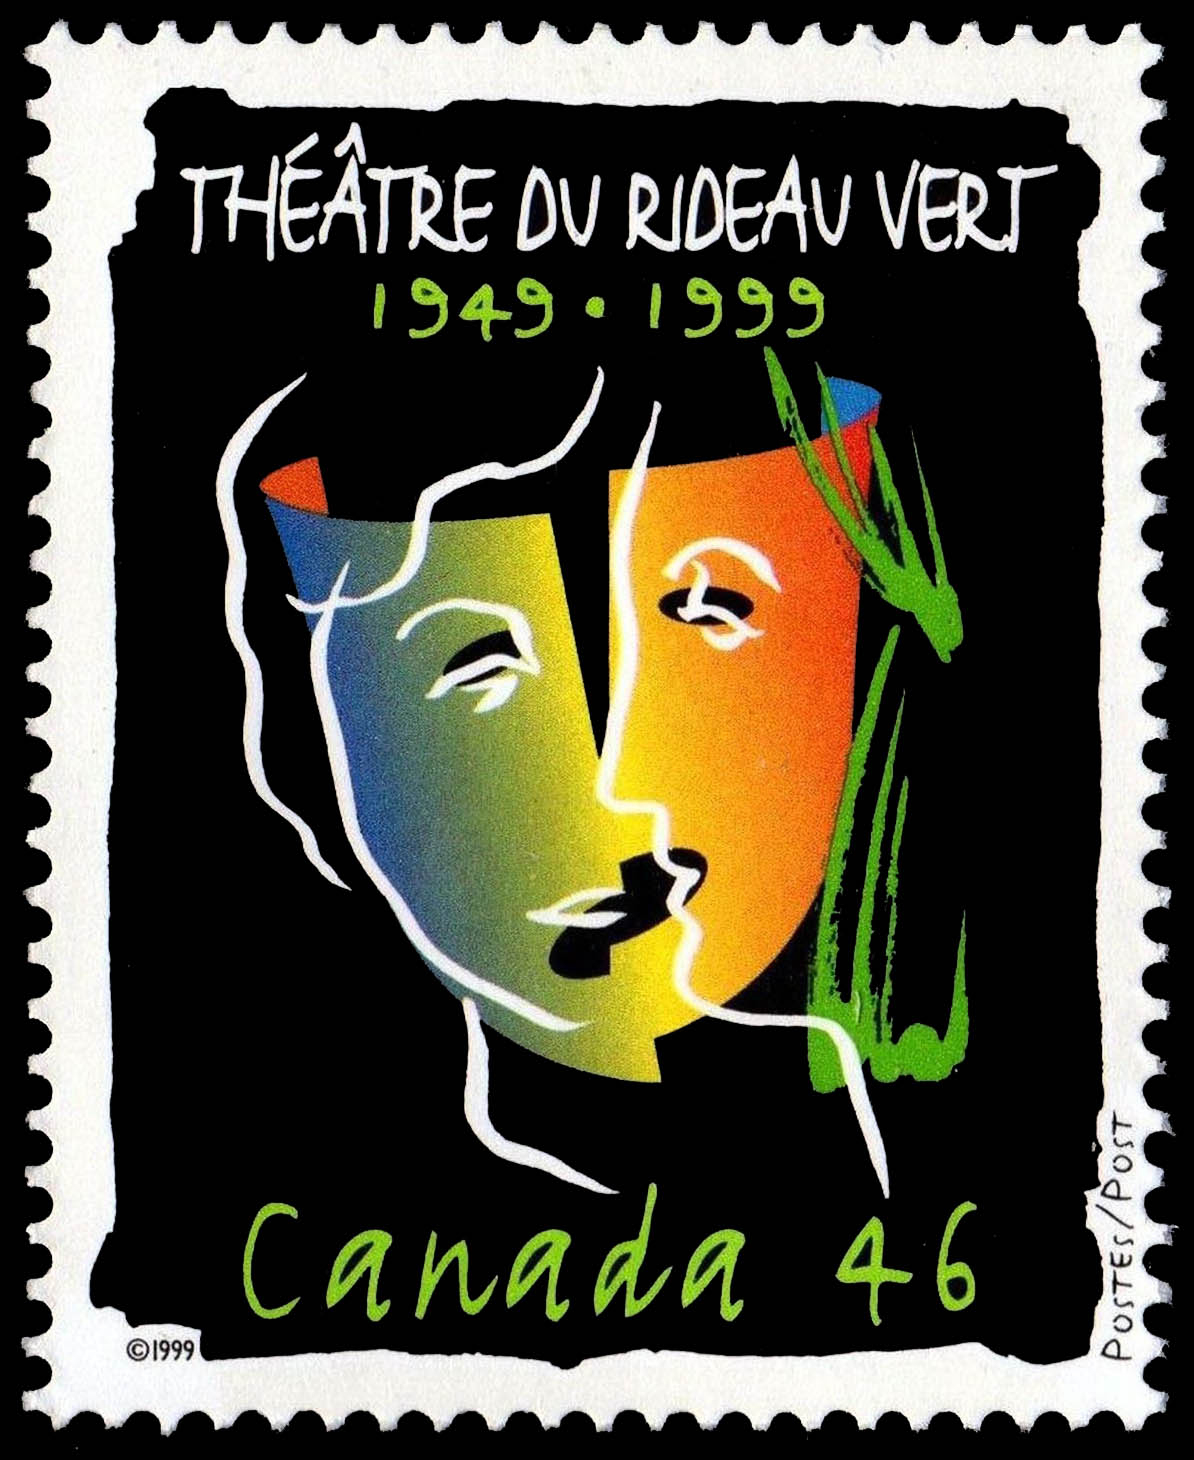 Theatre Du Rideau Vert, 1949-1999 - Canada Postage Stamp tout Rideau Voilage Psg